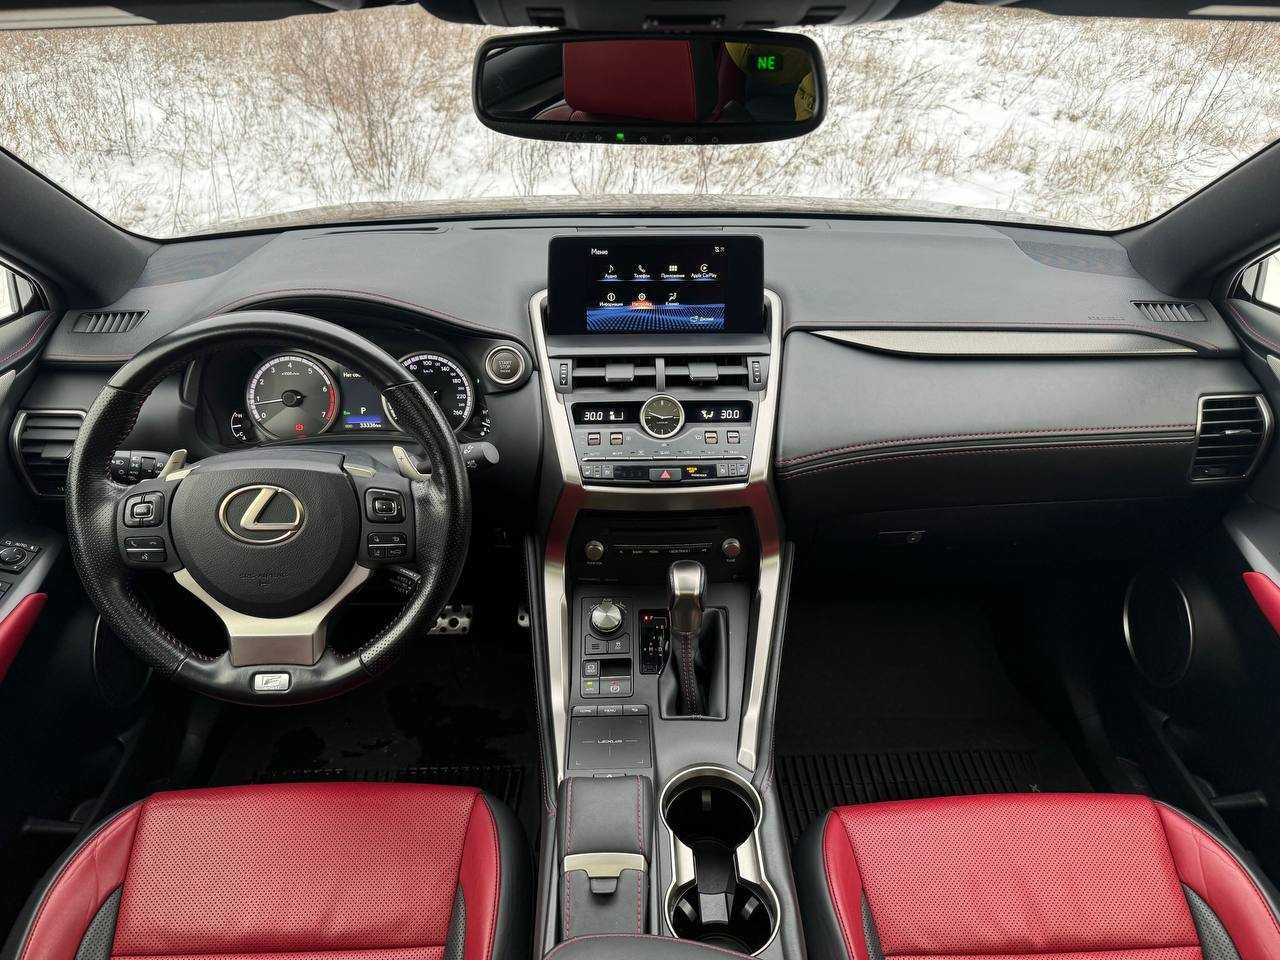 Lexus NX 300 F-sport, 2020 рік, 2.0 бензин, автомат, повний привід